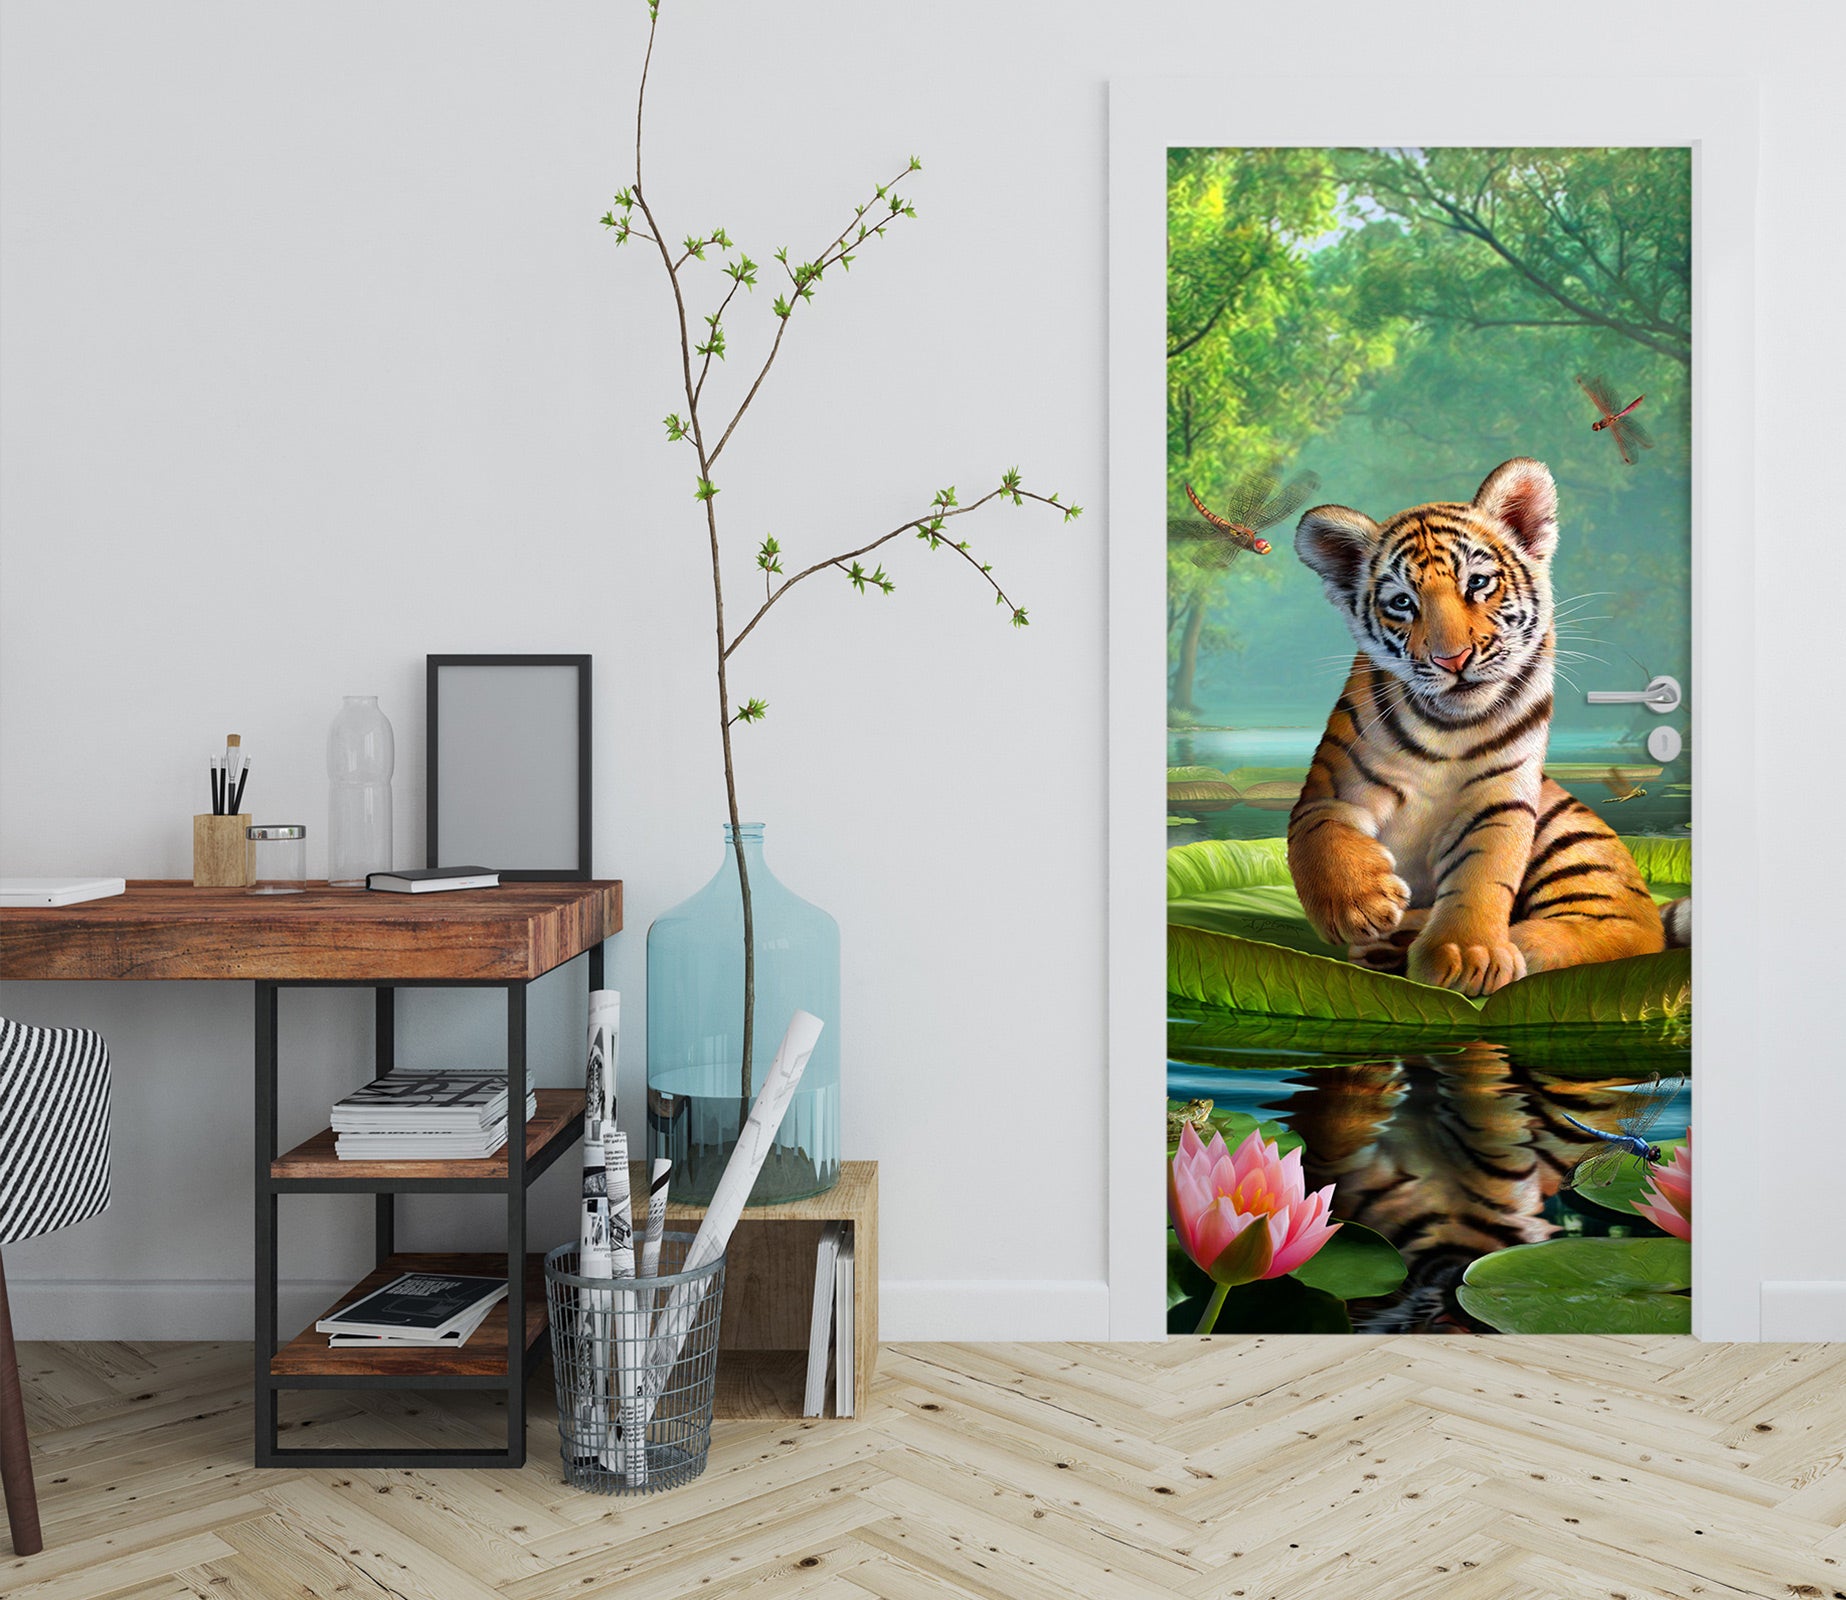 3D Tiger 112156 Jerry LoFaro Door Mural